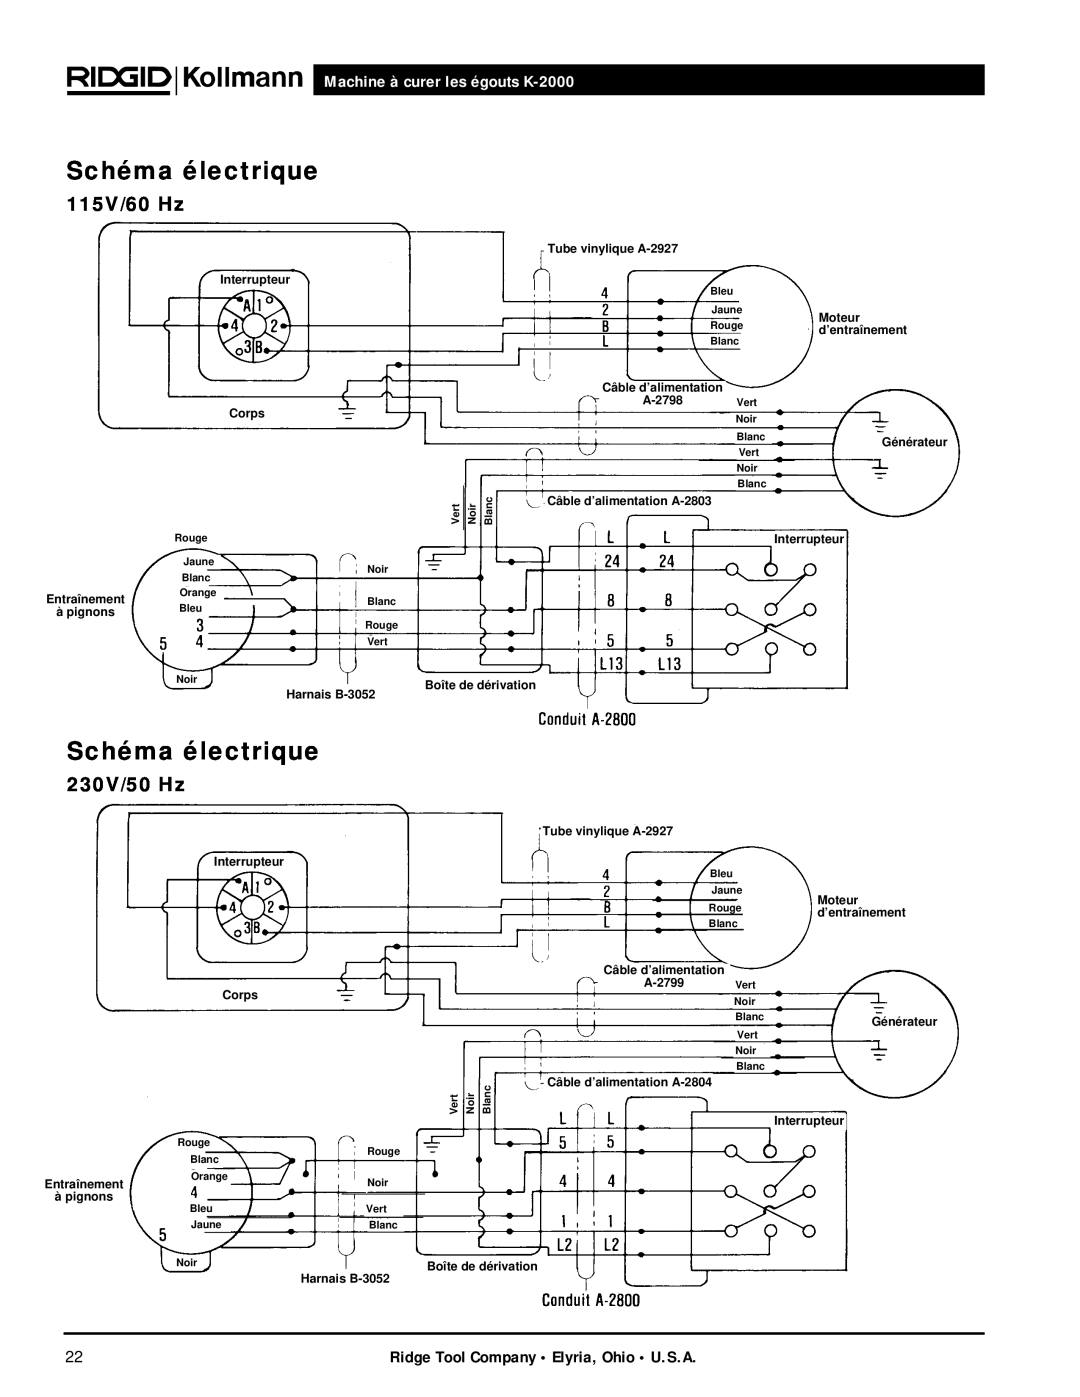 RIDGID manual Schéma électrique, 115V/60 Hz, 230V/50 Hz, Machine à curer les égouts K-2000 